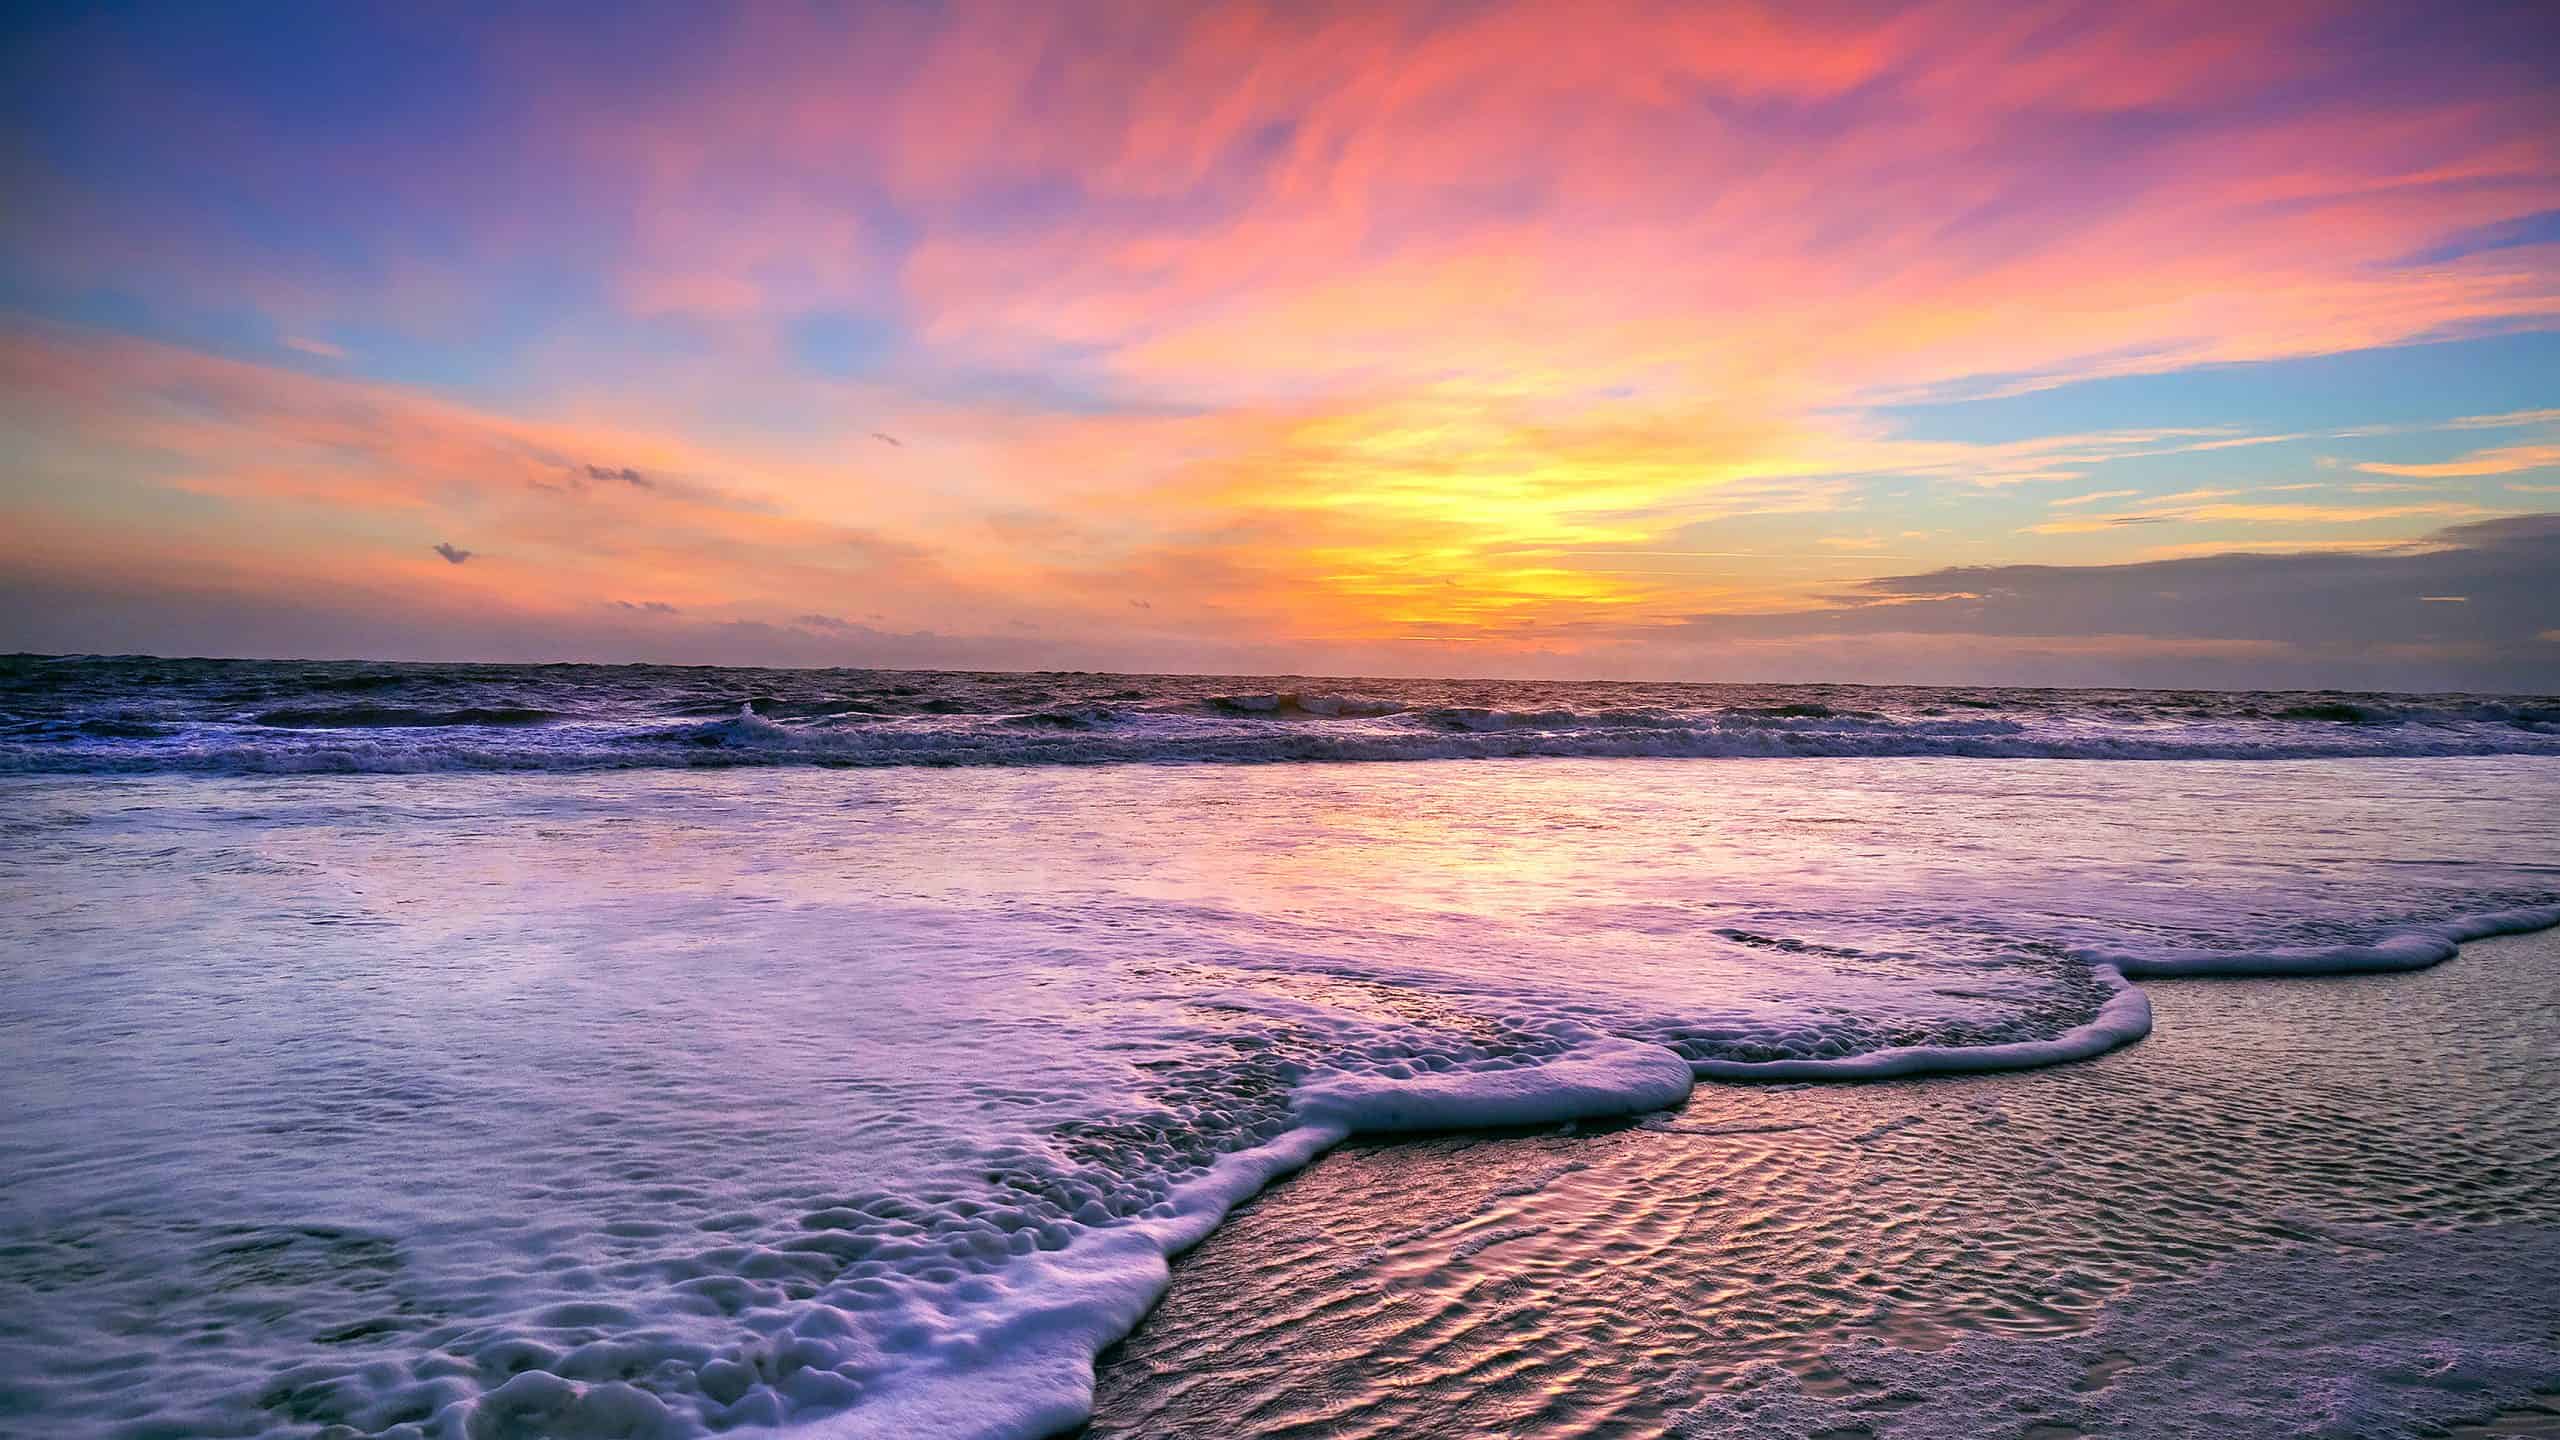 A colorful sunrise on Folly Beach